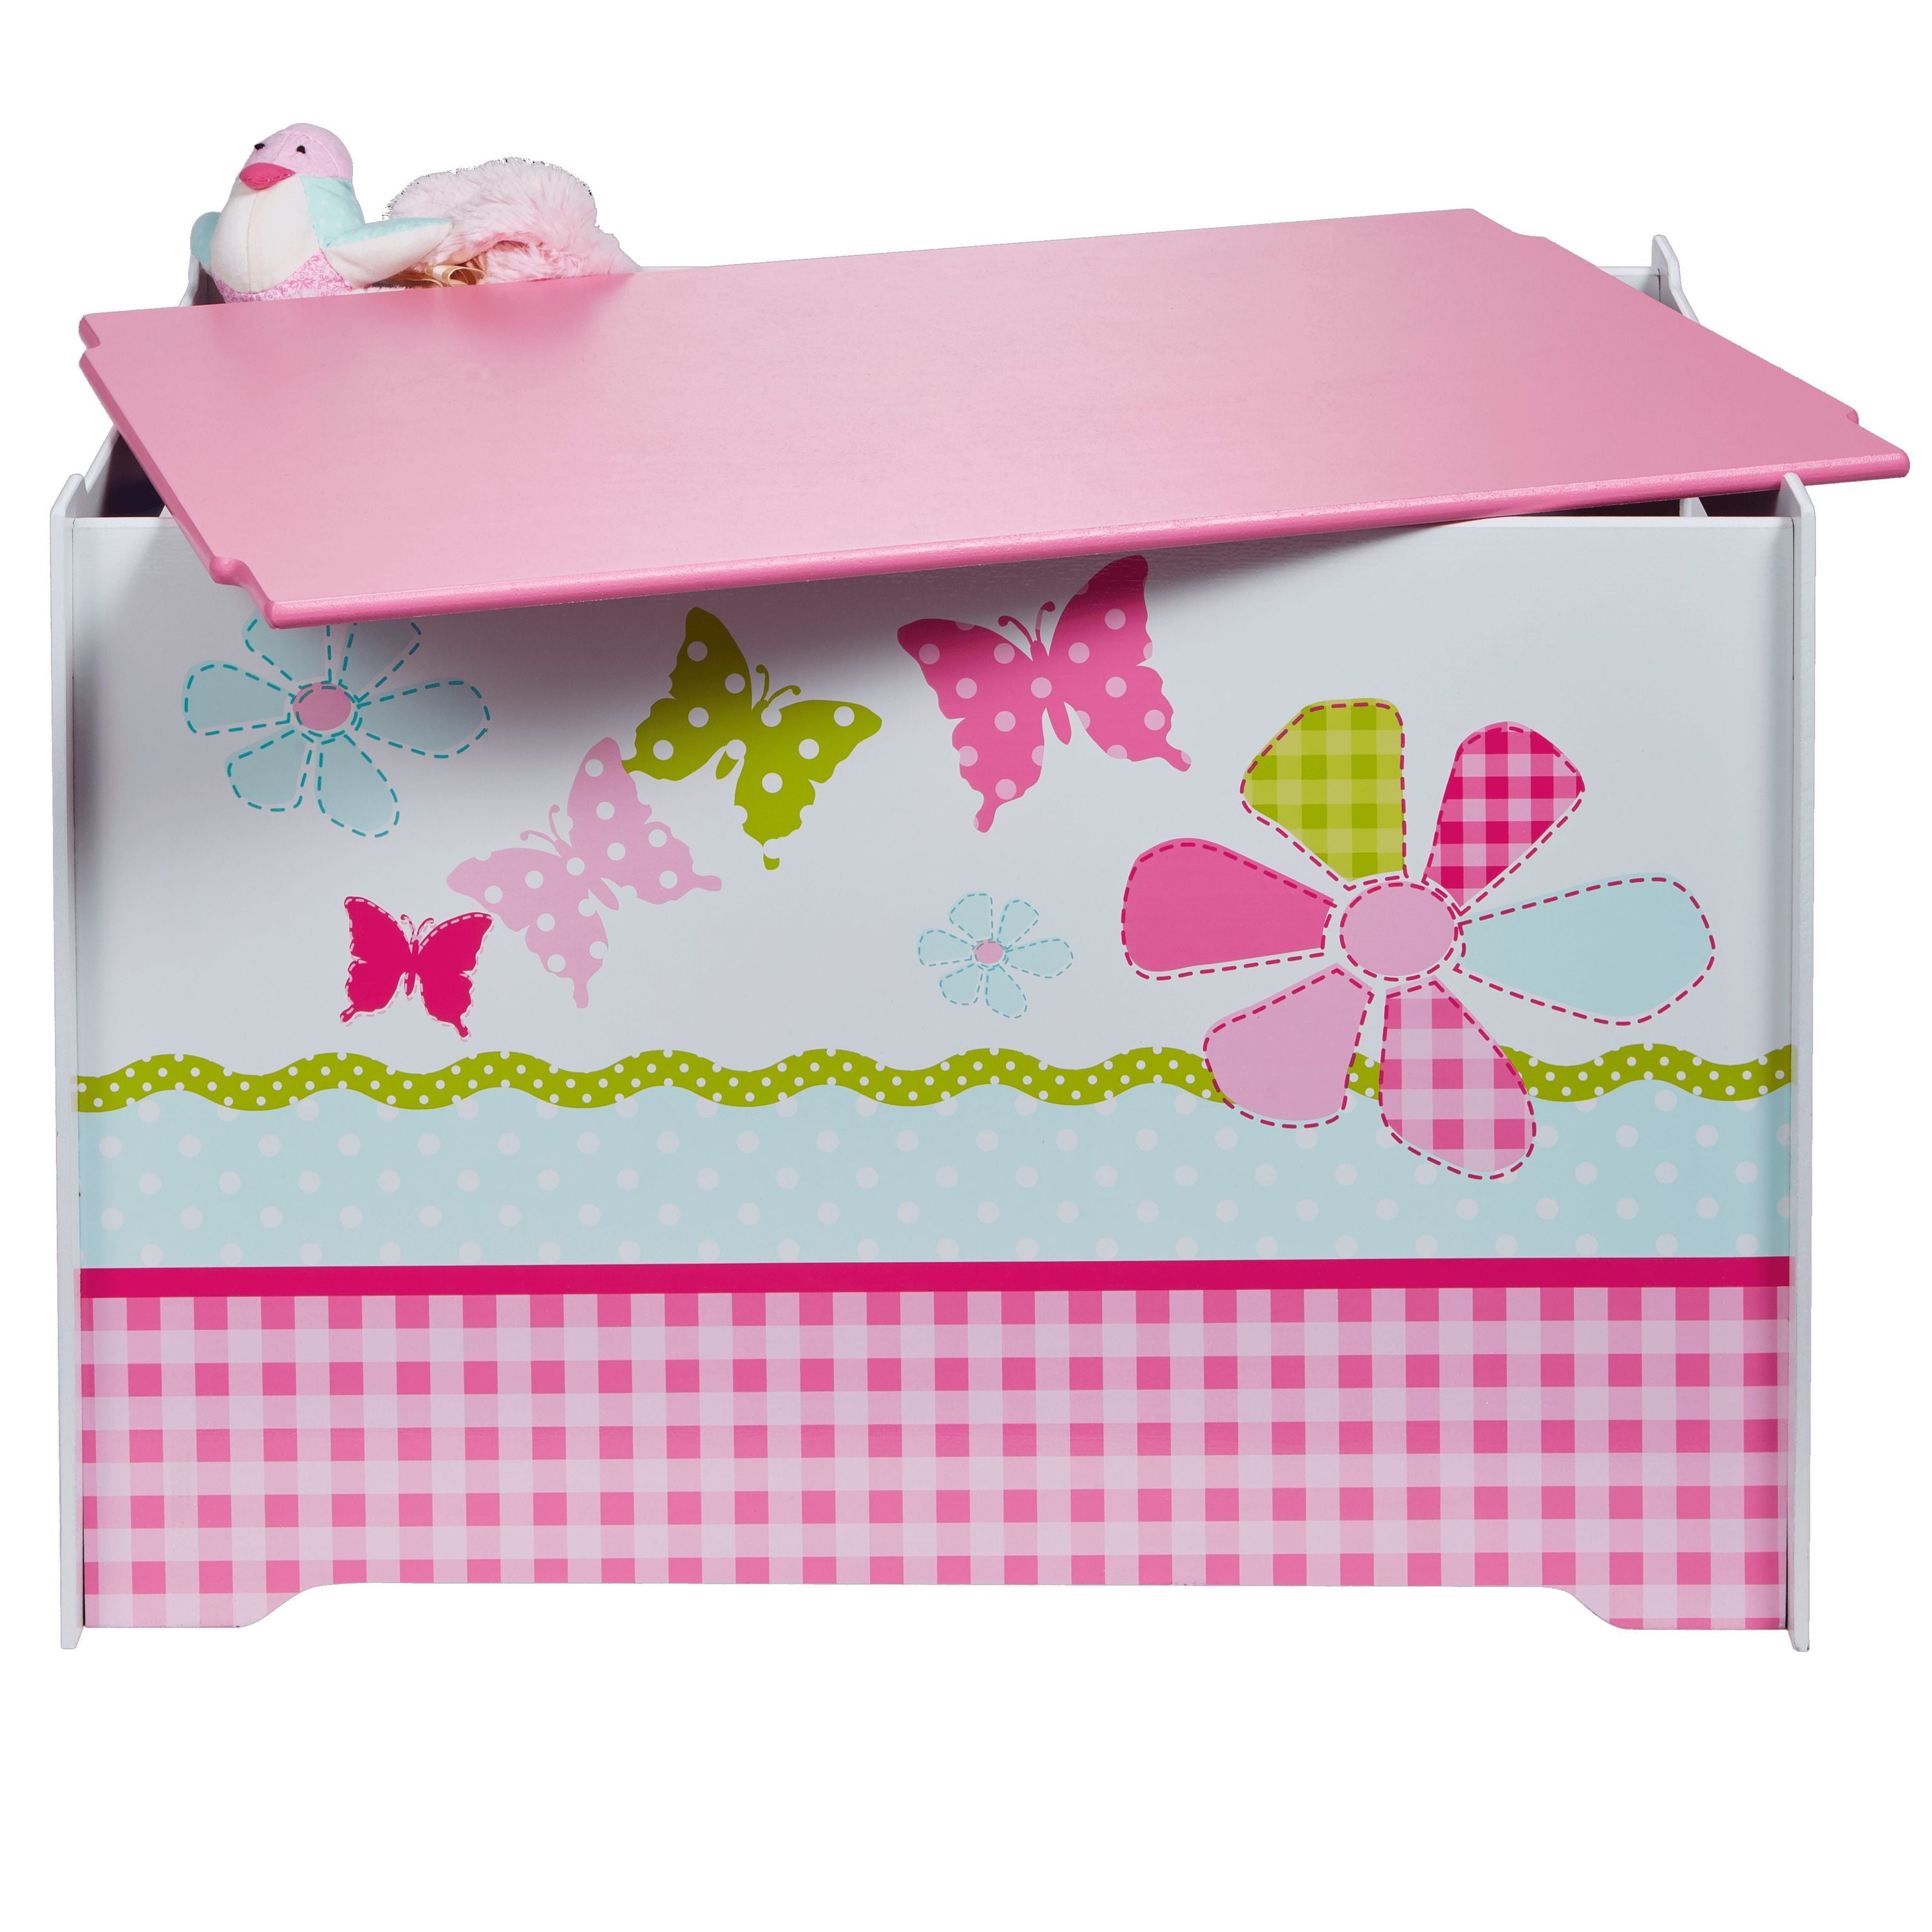 Schmetterlinge & Blumen Spielzeugkiste Rosa für Kinder – Aufbewahrungsbox für das Kinderzimmer